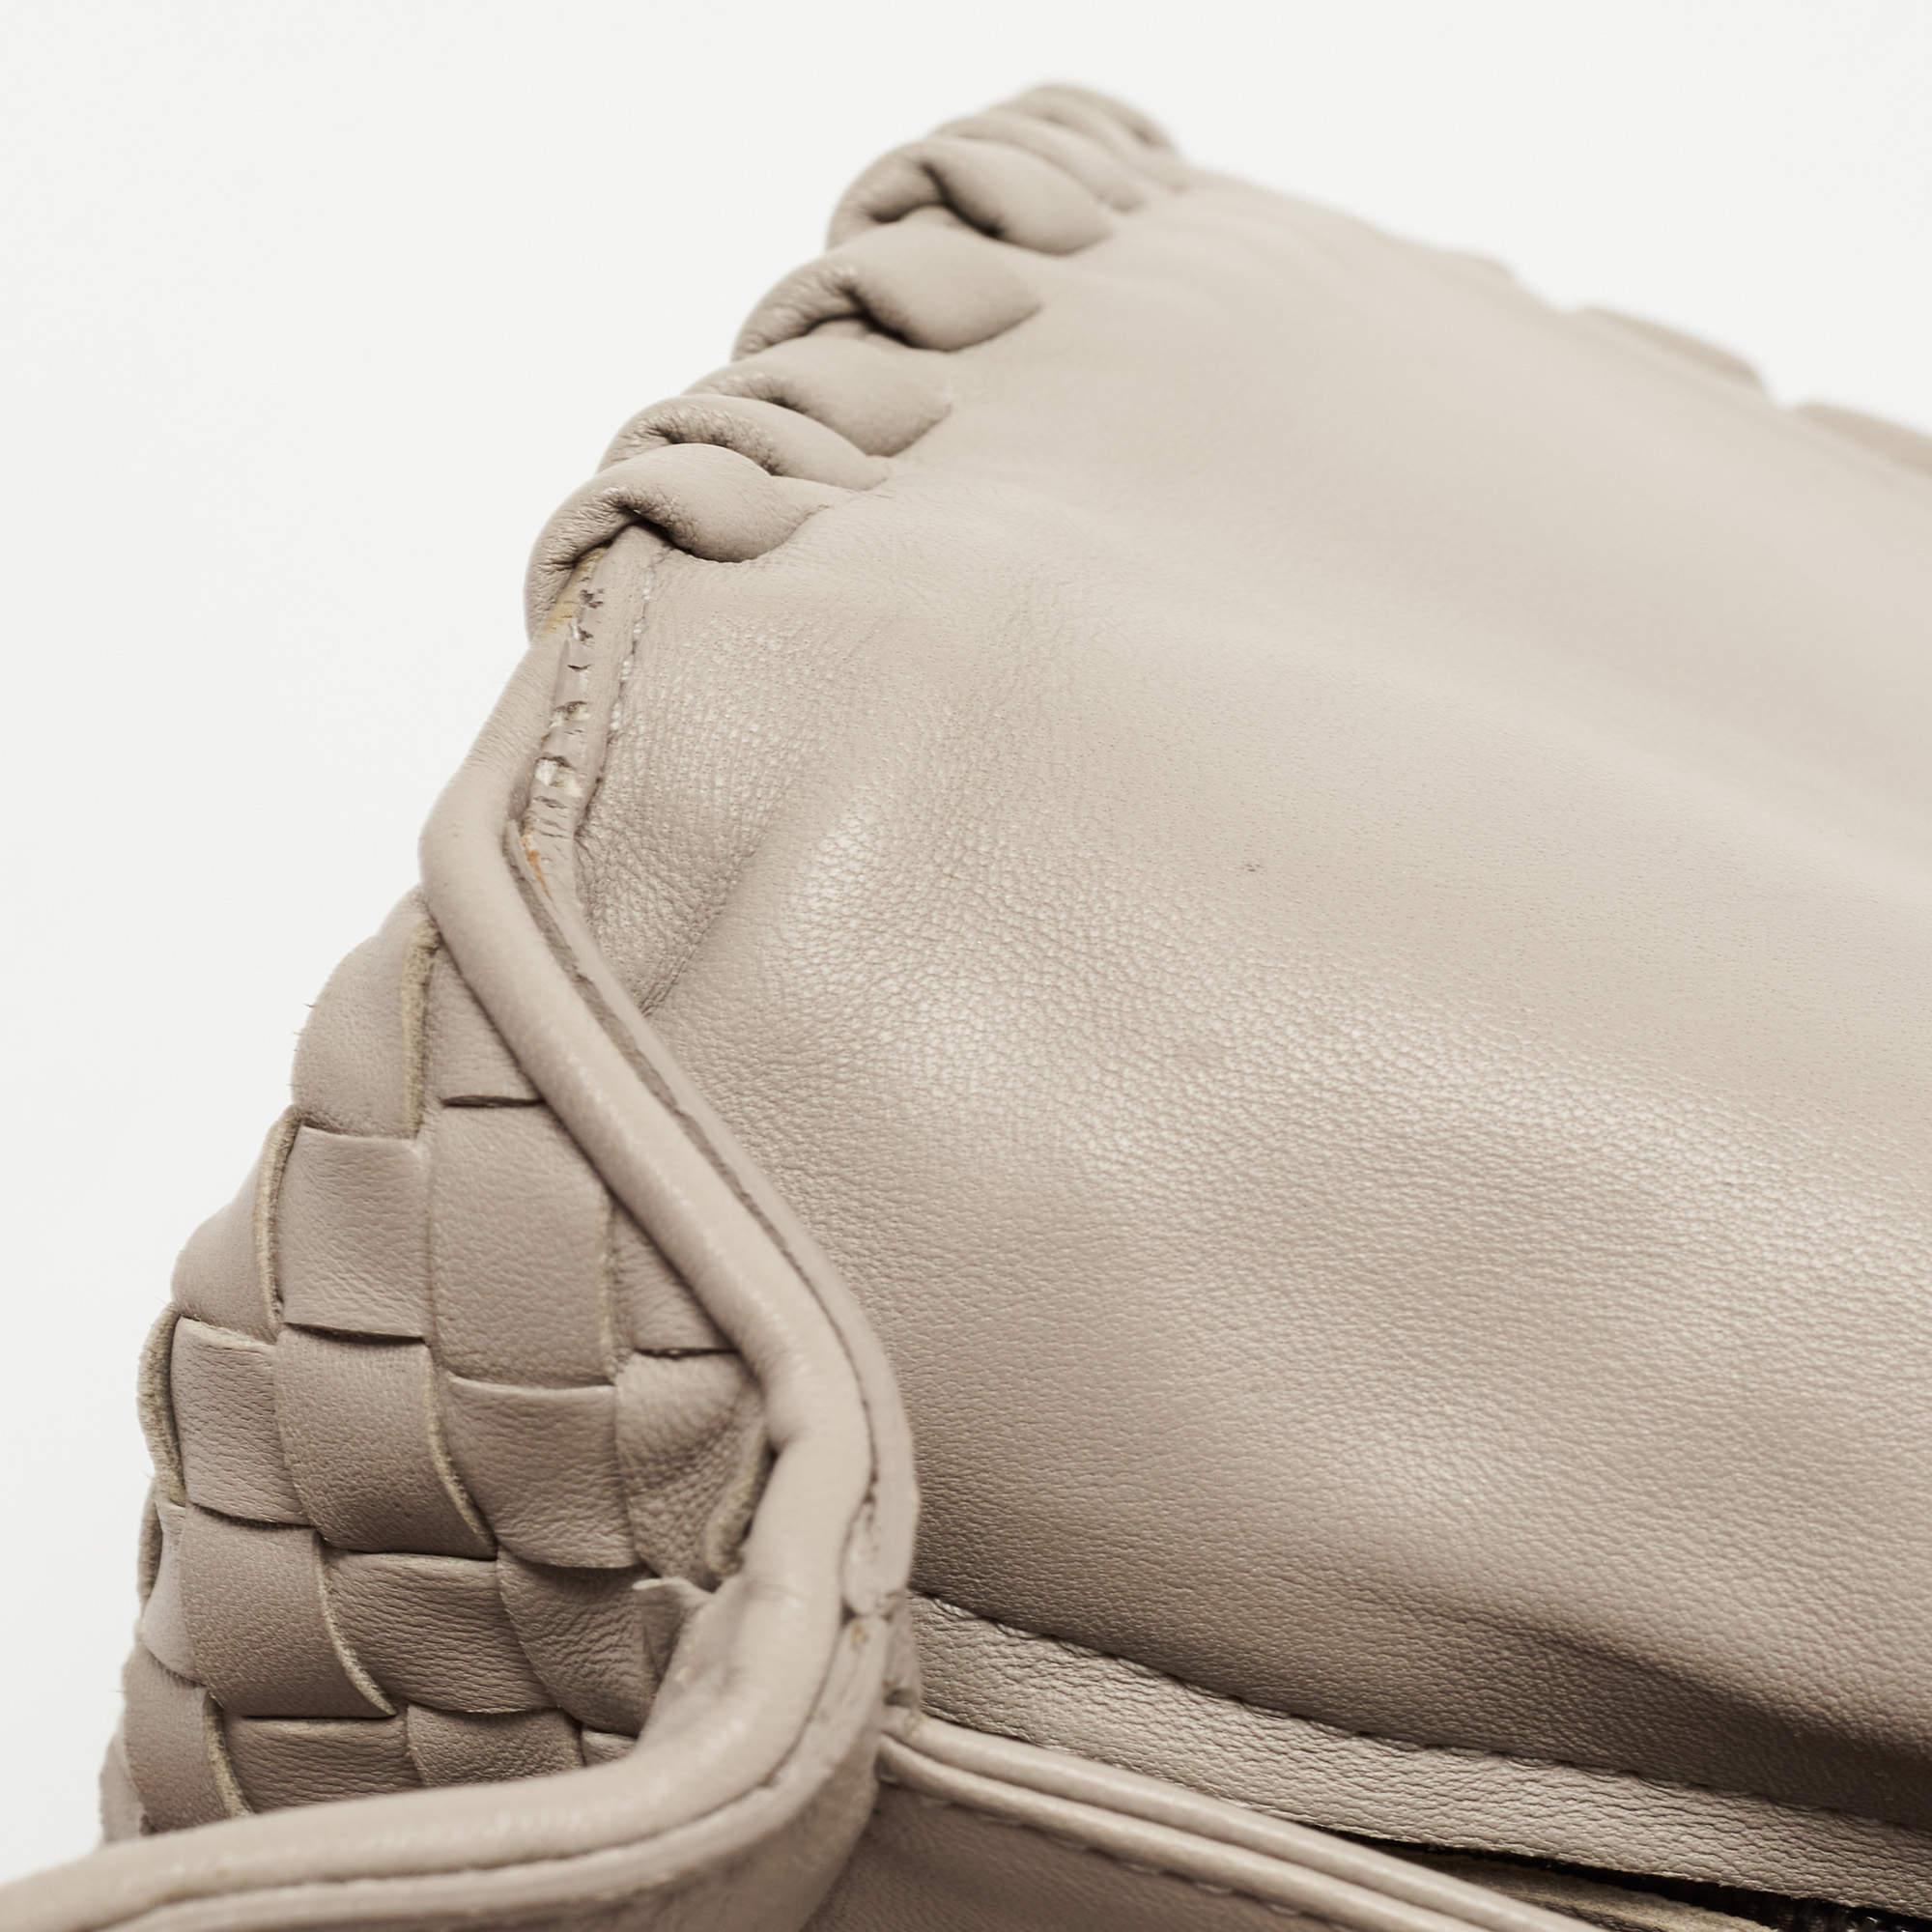 Bottega Veneta Beige Intrecciato Leather Olimpia Top Handle Bag 12